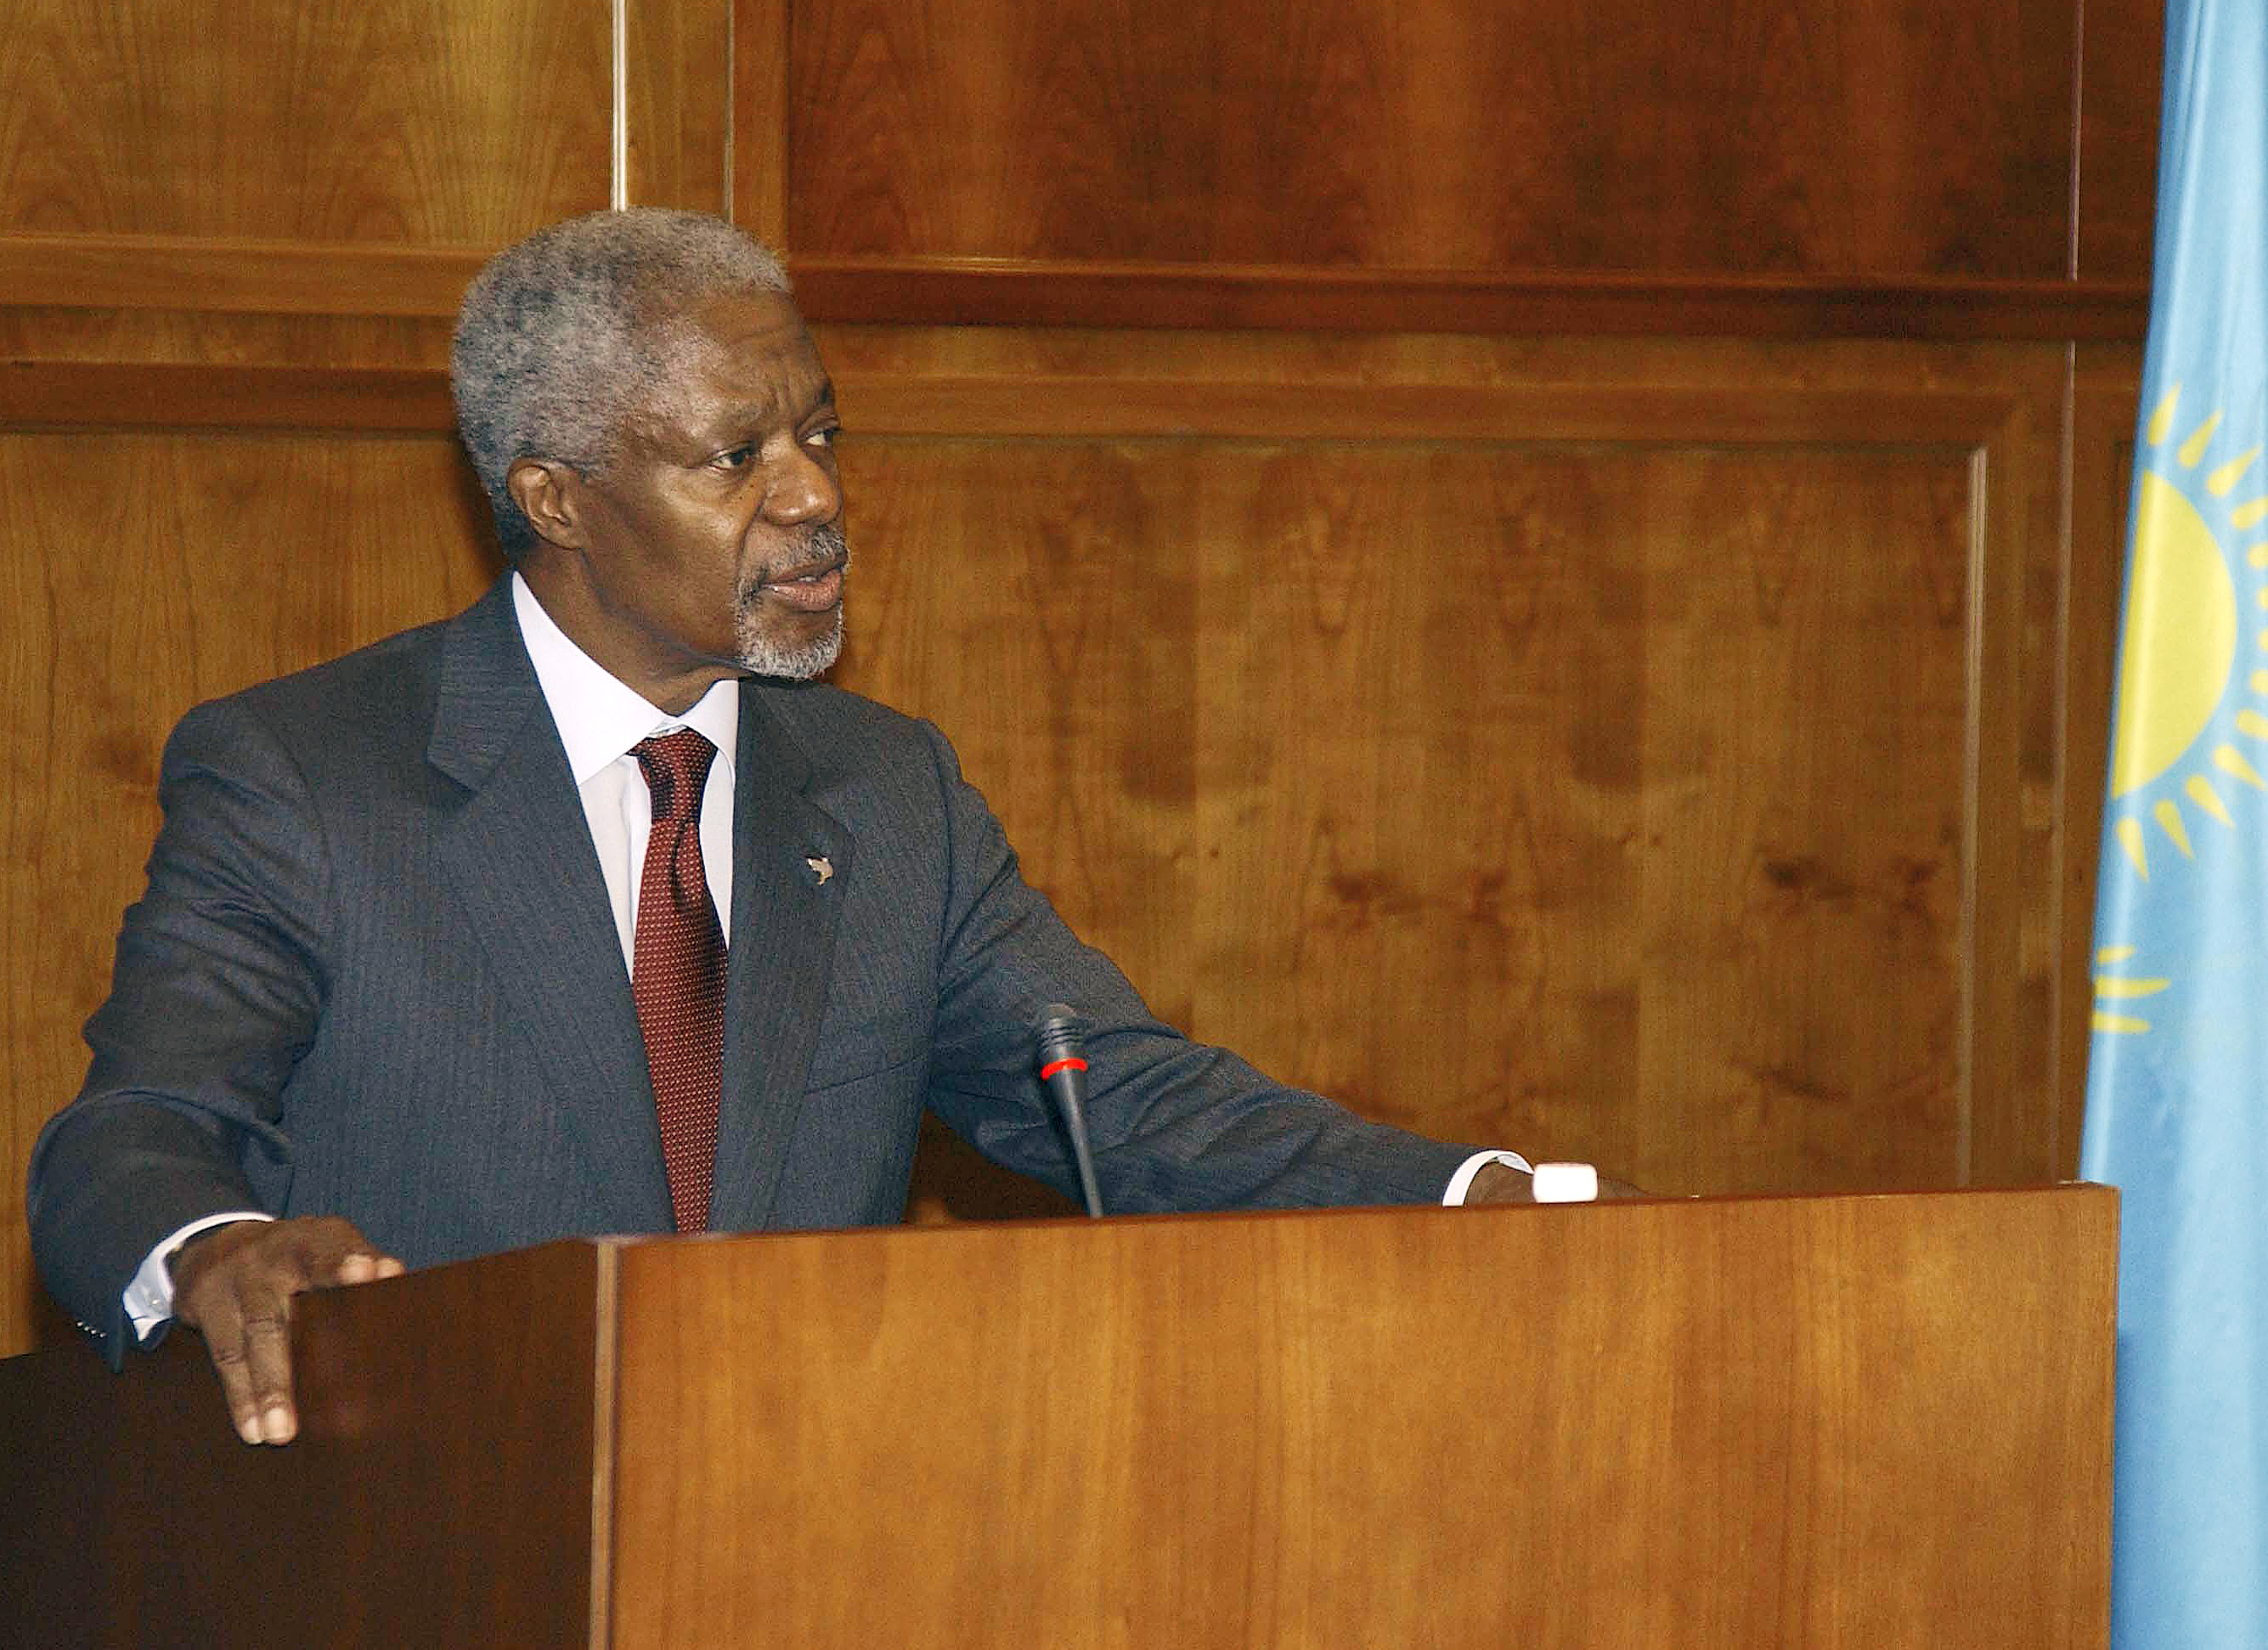 Қайрат Әбдірахманов: Кофи Аннан - БҰҰ тарихында өзіндік орны бар ерекше тұлға